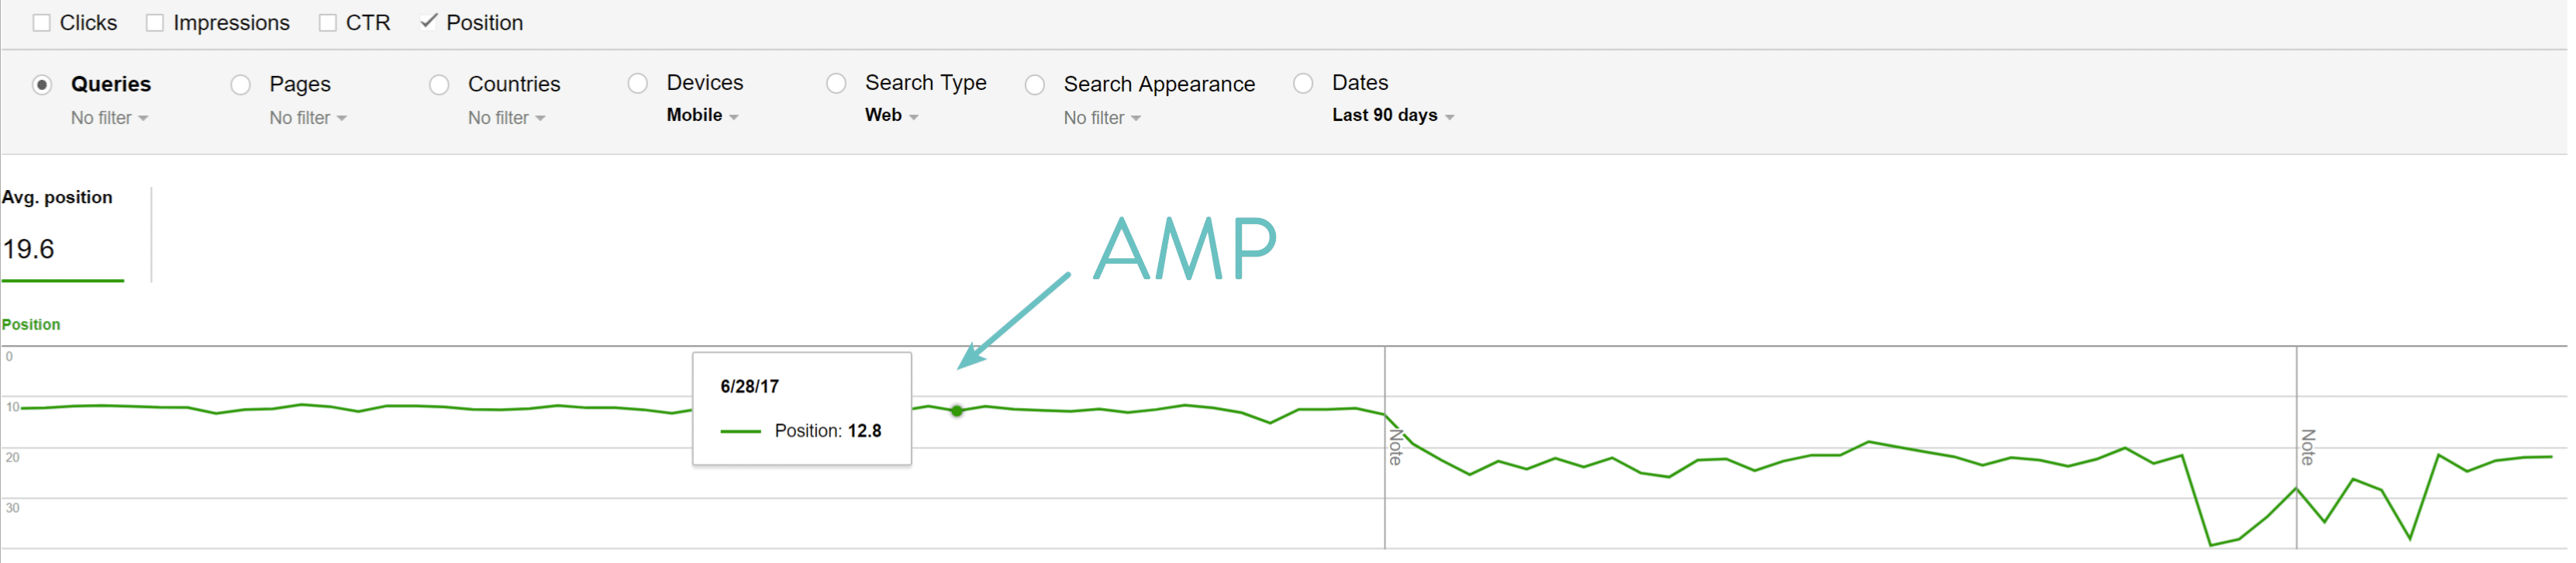 Как видите, после включения Google AMP и предоставления им времени для индексации мы определенно увидели уменьшение средних позиций в поисковой выдаче на мобильных устройствах